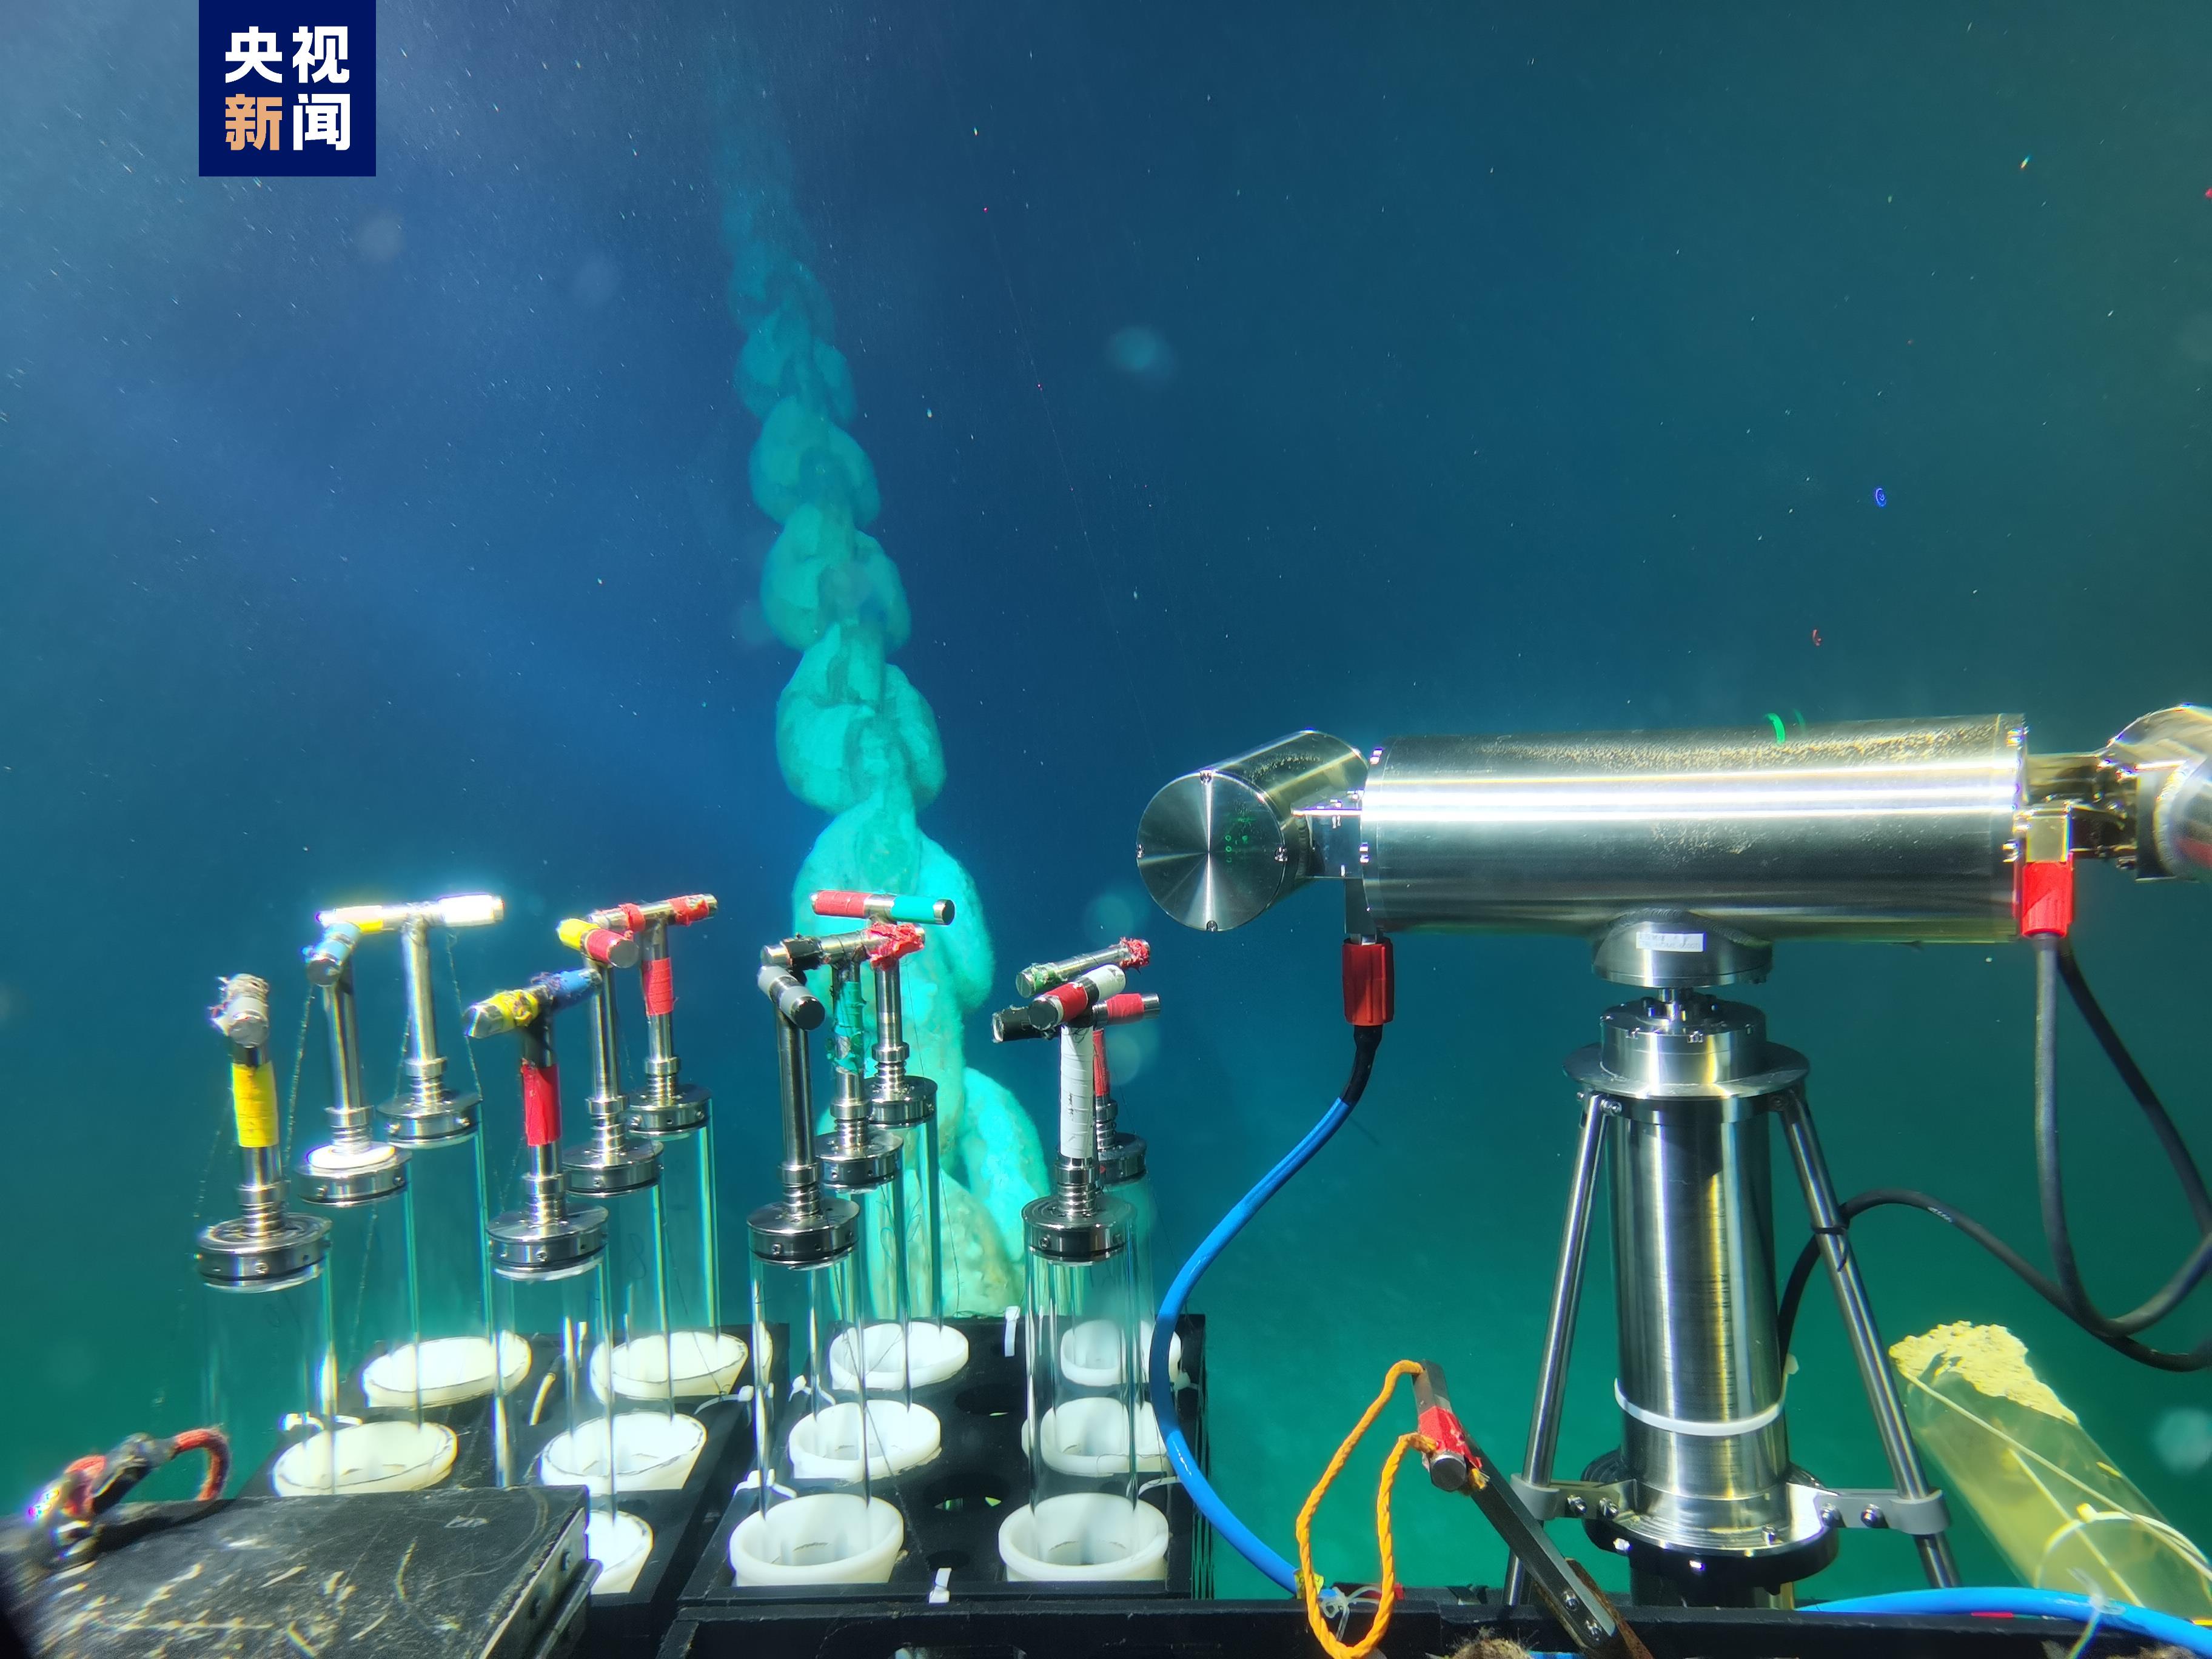 ภาพถ่ายที่ไม่ระบุวันที่นี้แสดงอุปกรณ์การวิจัยทางวิทยาศาสตร์ที่พัฒนาขึ้นเองซึ่งบรรทุกโดยเรือดำน้ำ Shenhai Yongshi  /CMG